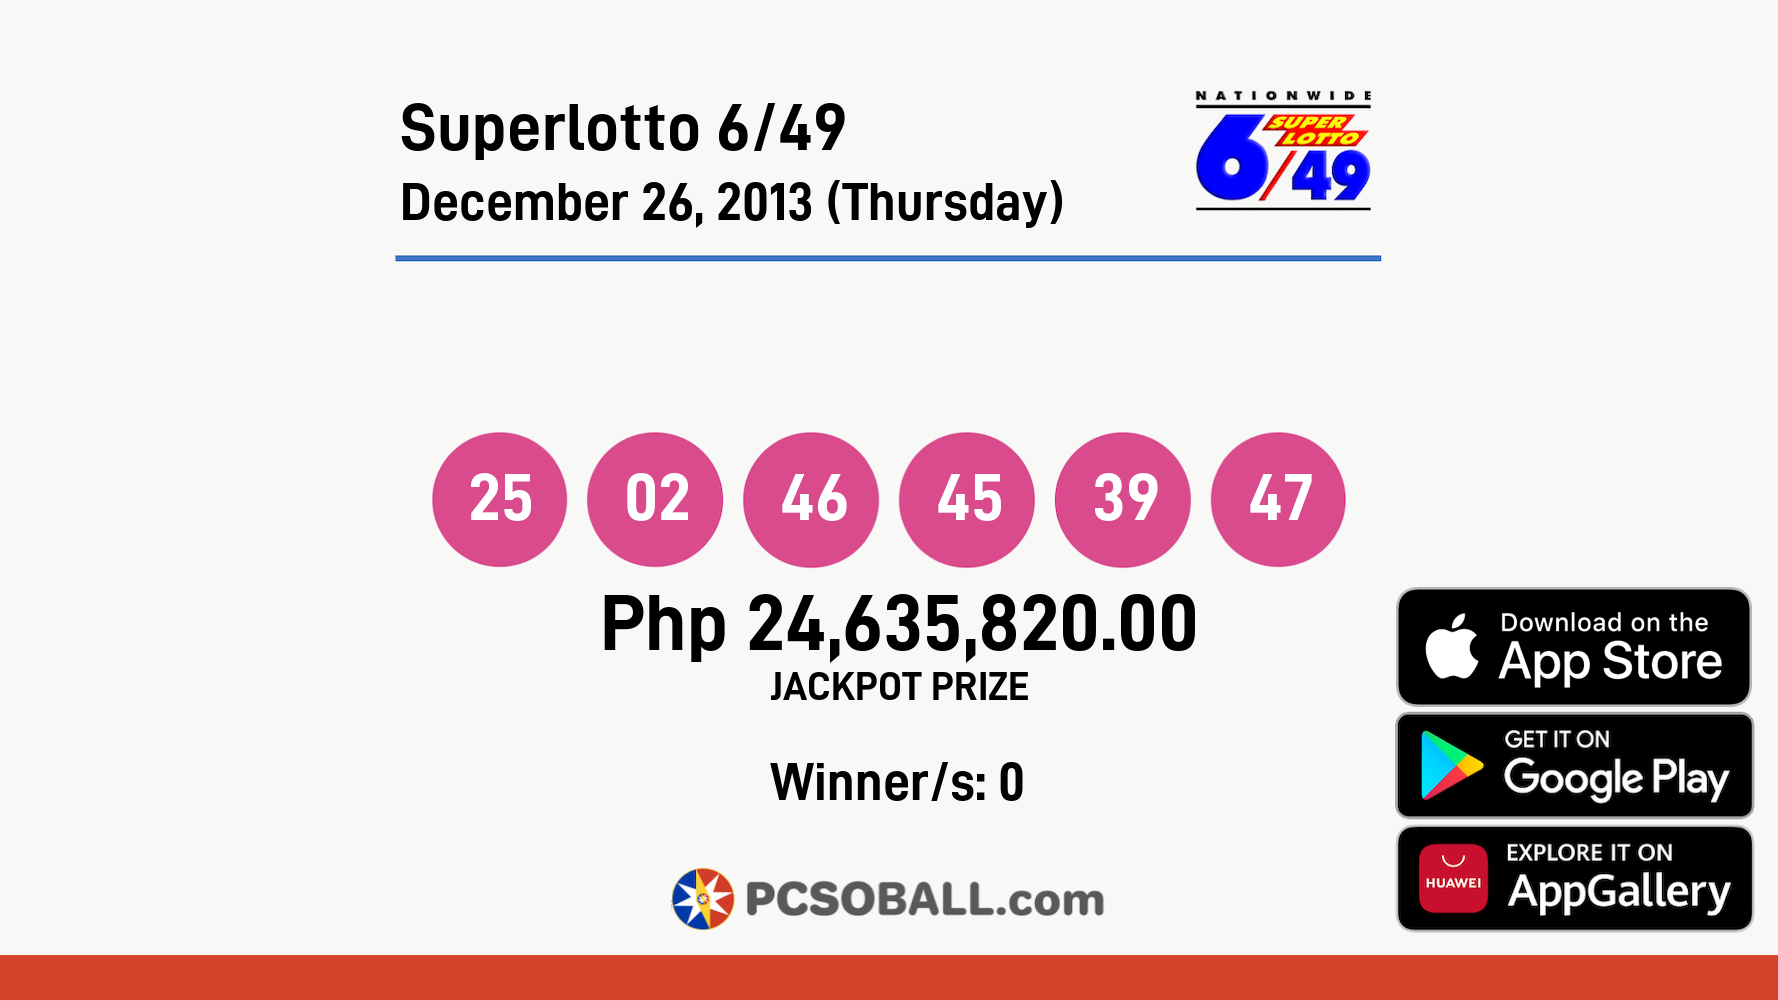 Superlotto 6/49 December 26, 2013 (Thursday) Result